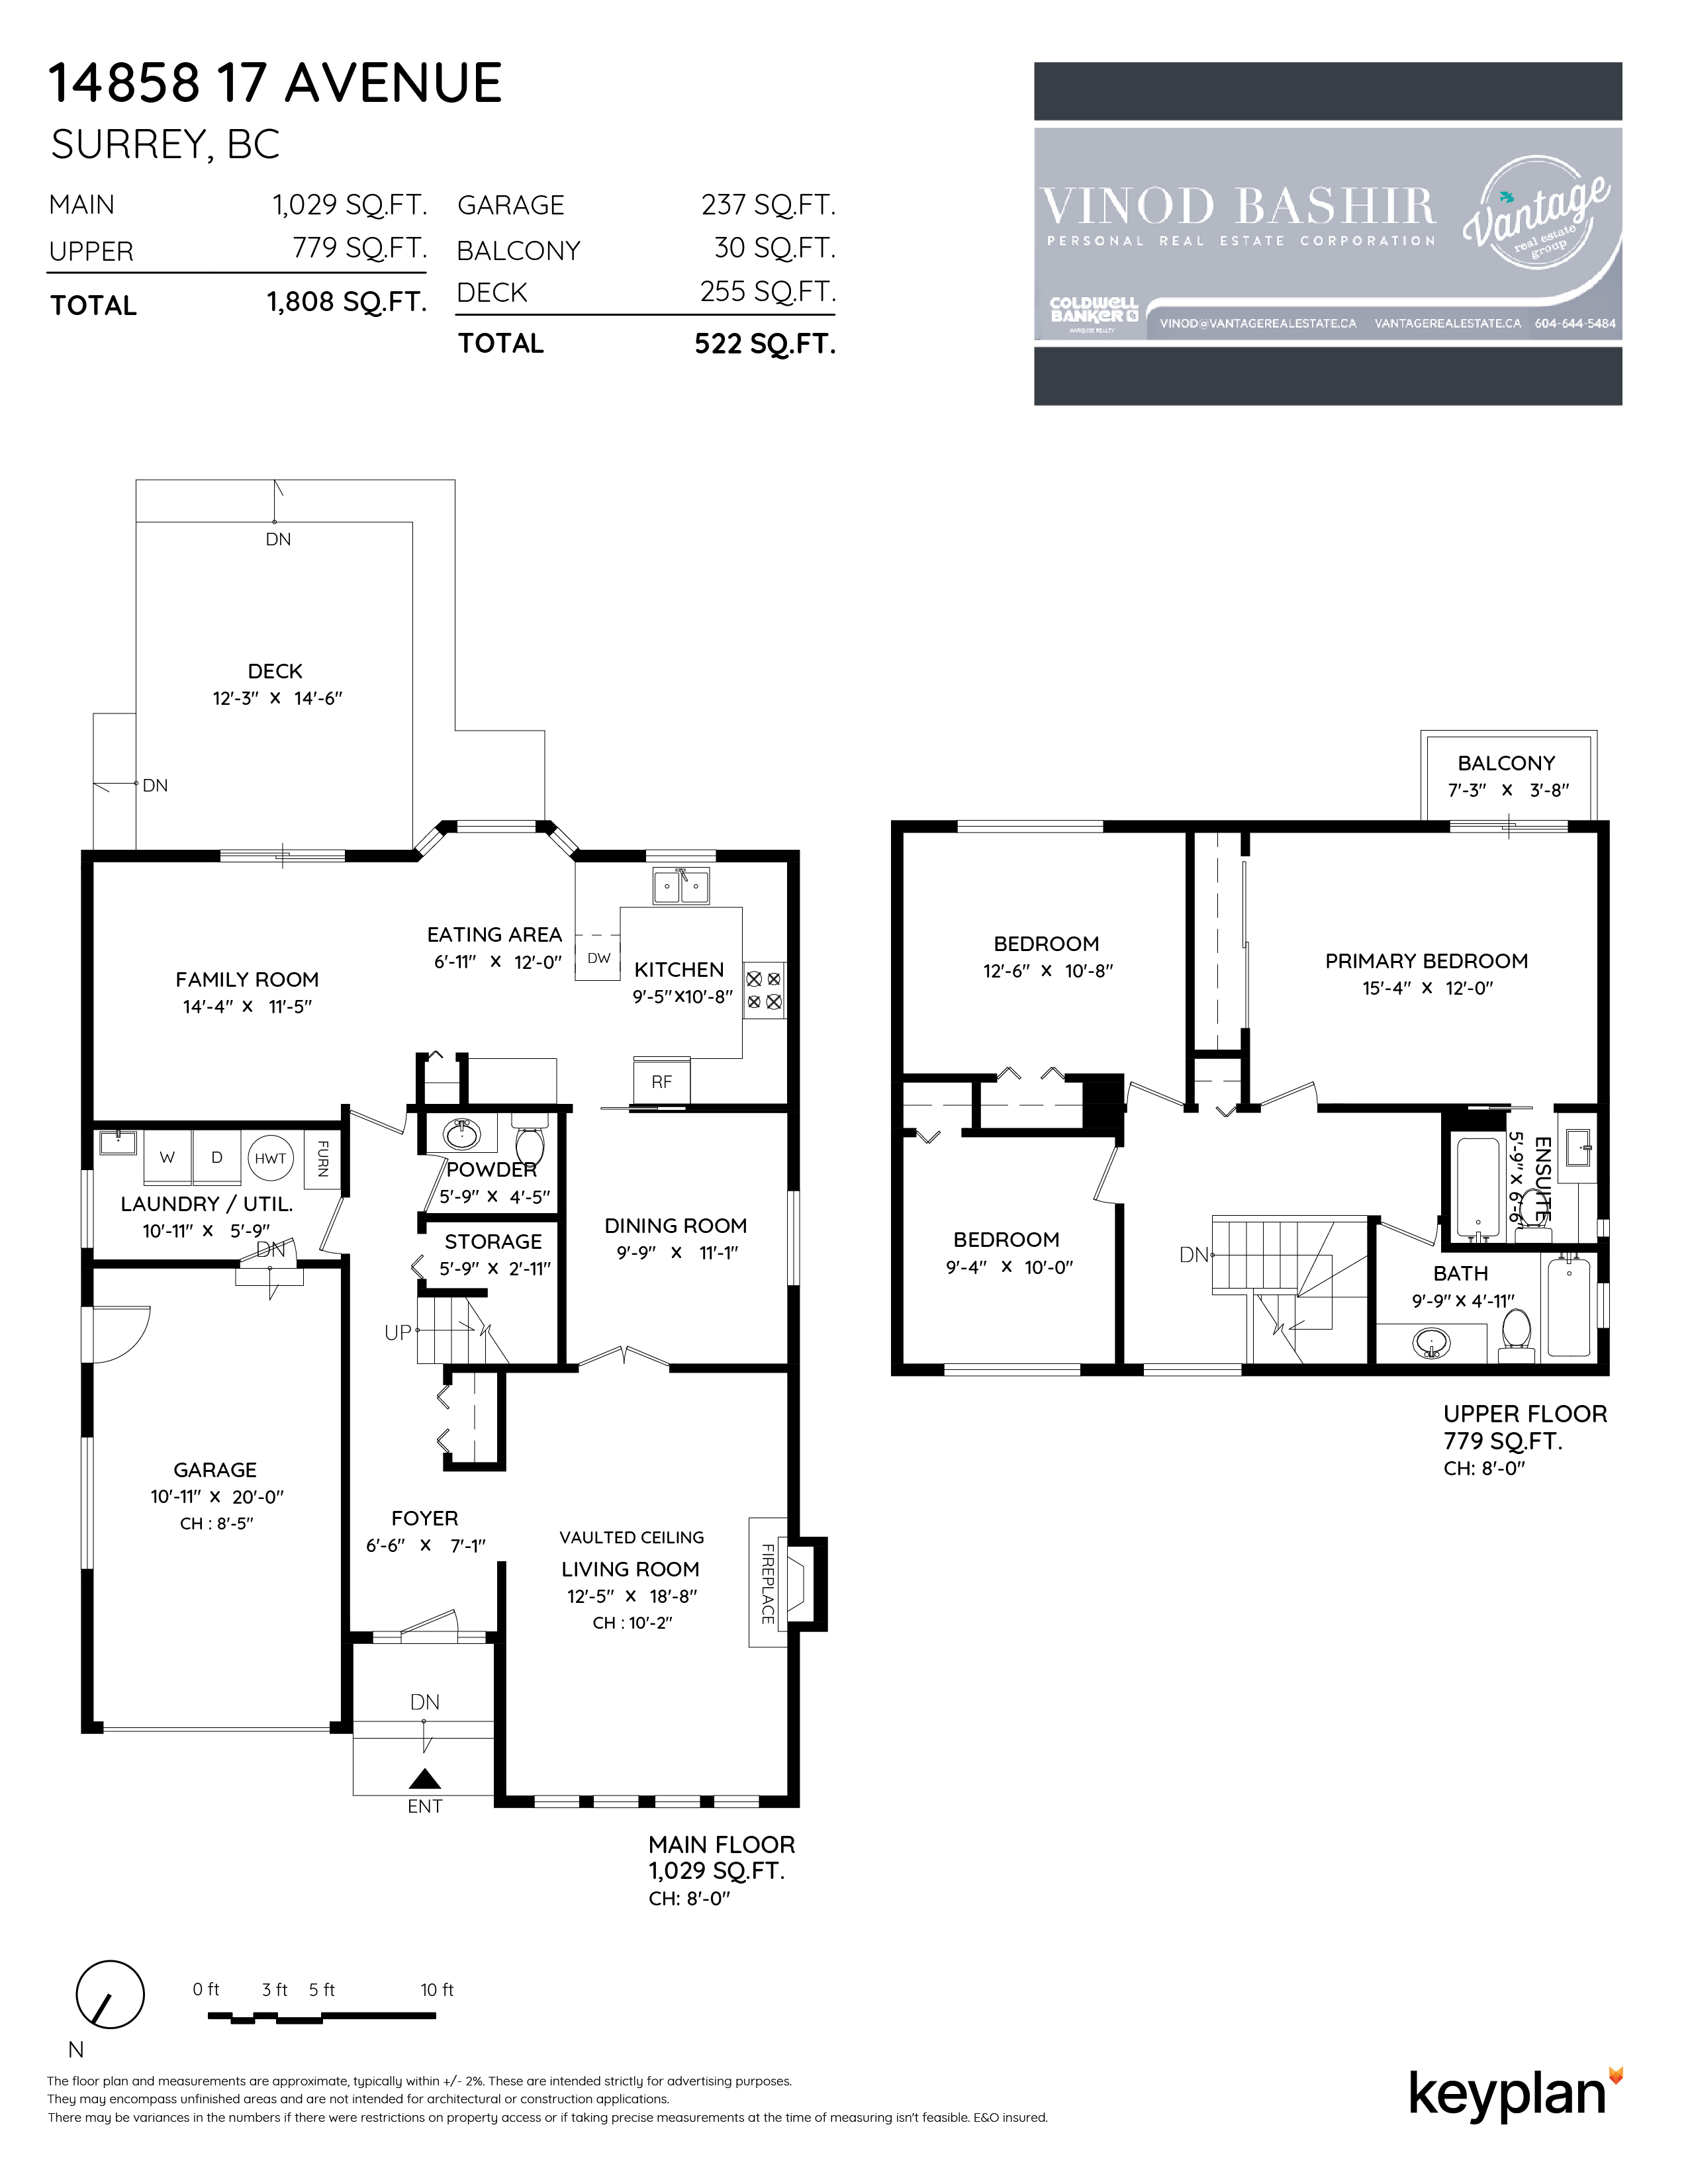 Vantage Real Estate Group - 14858 17 Avenue, Surrey, BC, Canada | Floor Plan 1